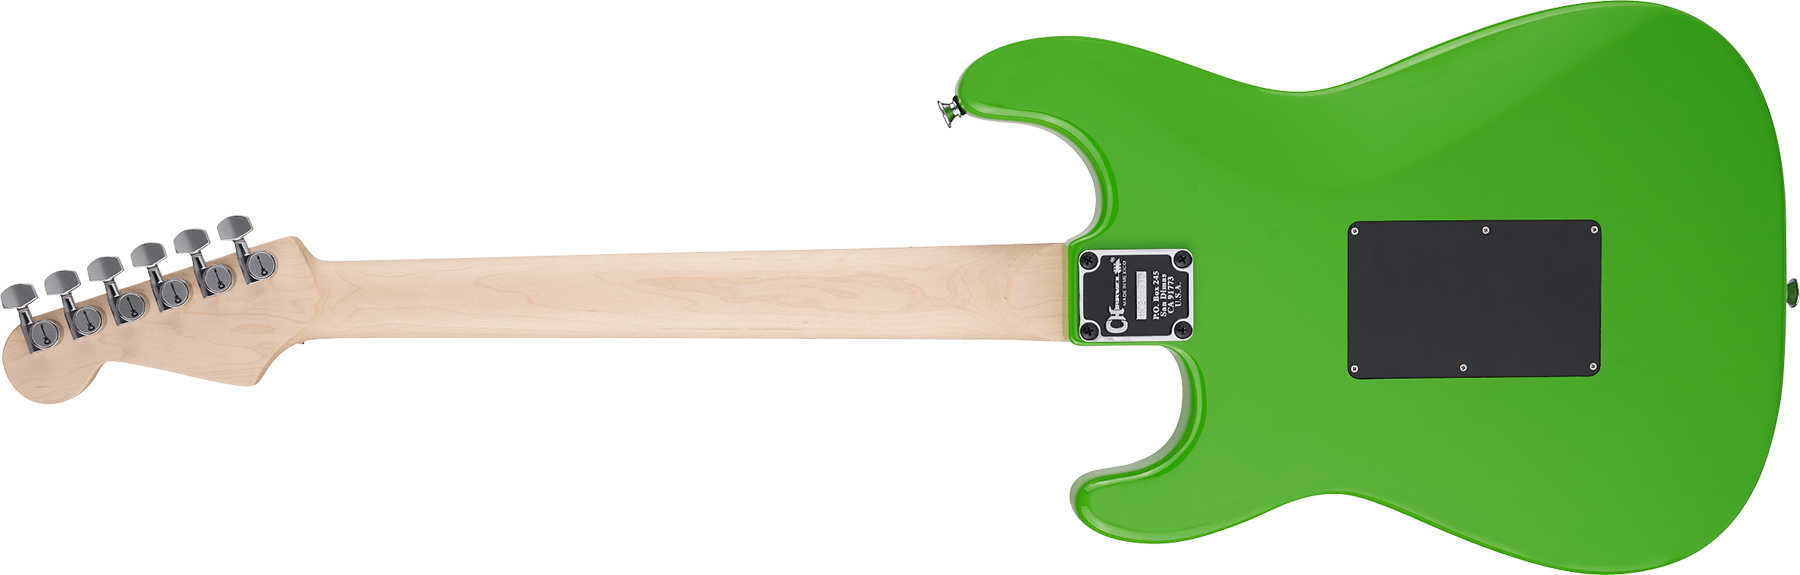 Charvel So-cal Style 1 Hsh  Fr M Pro-mod Seymour Duncan Mn - Slime Green - E-Gitarre in Str-Form - Variation 1